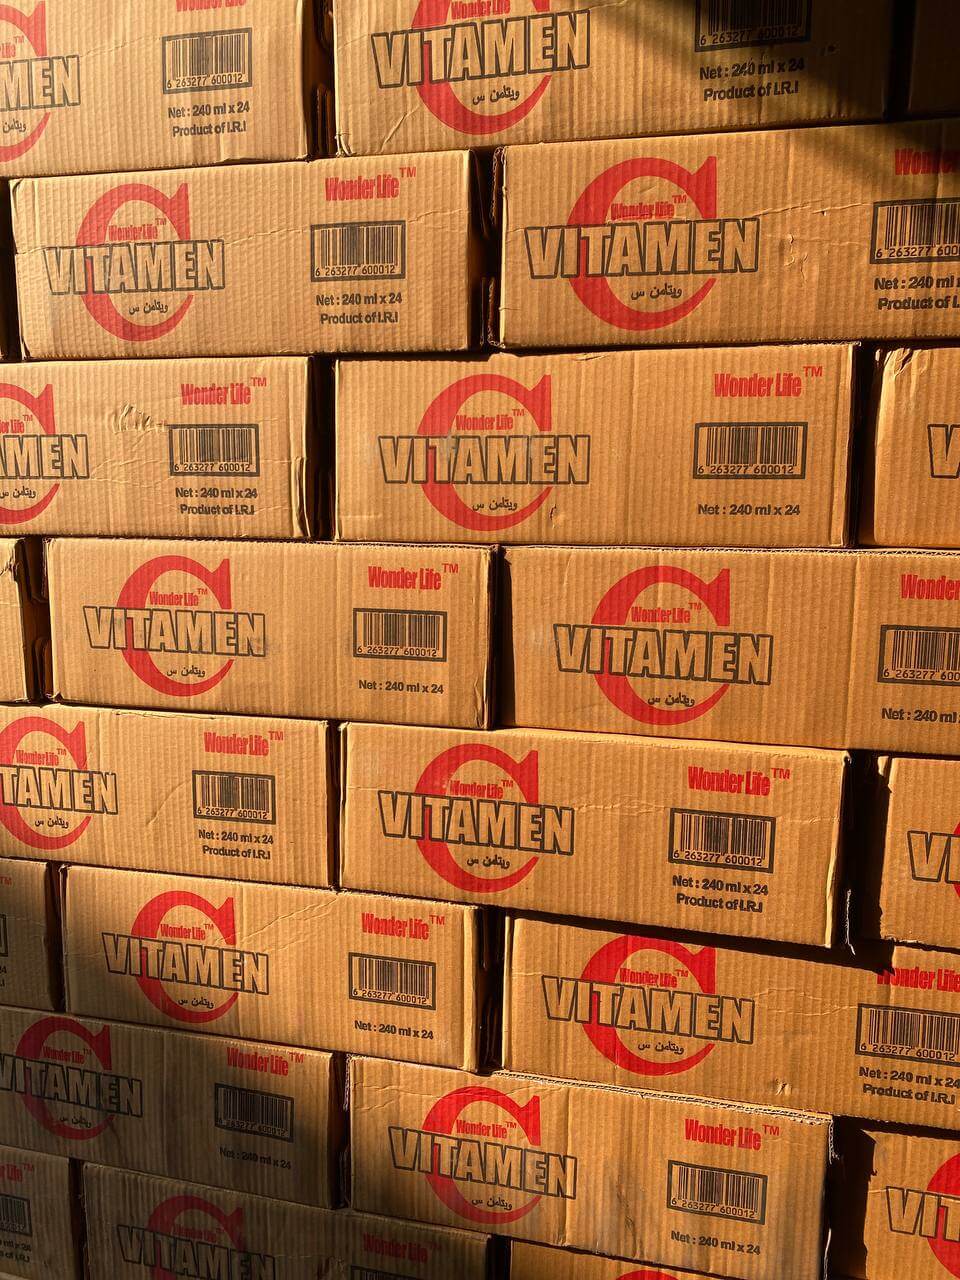 خرید نوشیدنی ویتامین سی ث قیمت عمده خرید نوشیدنی ویتامین سی ث قیمت عمده ، پخش عمده ویتامین سی در تهران ، فروشنده اصلی ویتامین سی ، تولیدکنندگان ویتامین سی , نوشیدنی انرژی زا بریوما سی